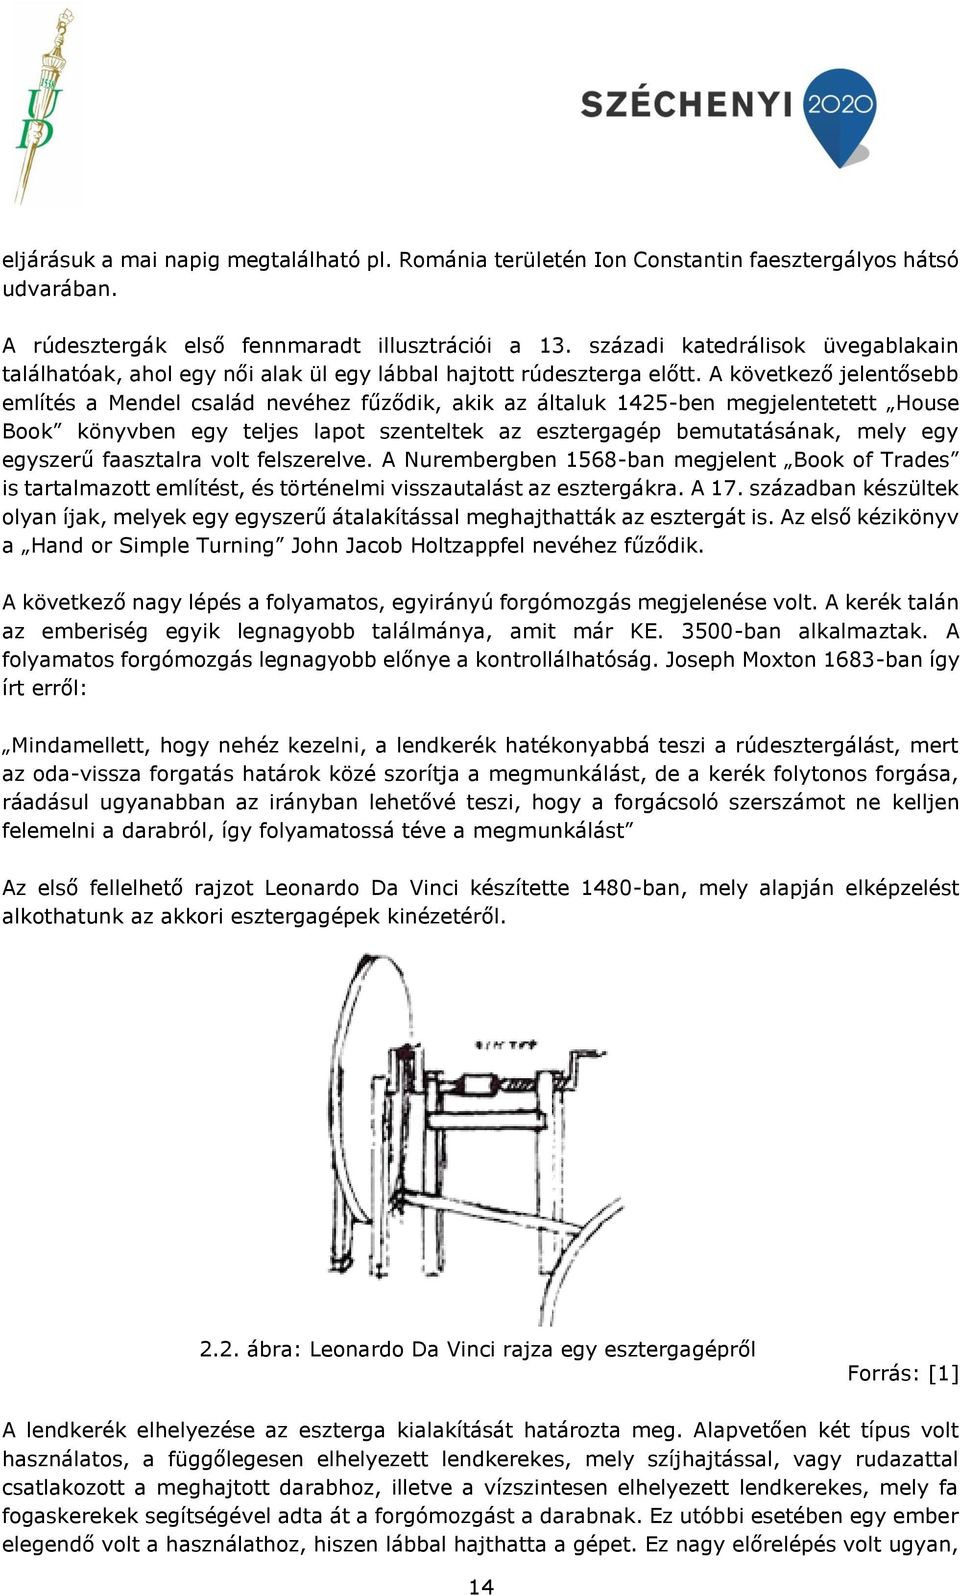 A következő jelentősebb említés a Mendel család nevéhez fűződik, akik az általuk 1425-ben megjelentetett House Book könyvben egy teljes lapot szenteltek az esztergagép bemutatásának, mely egy